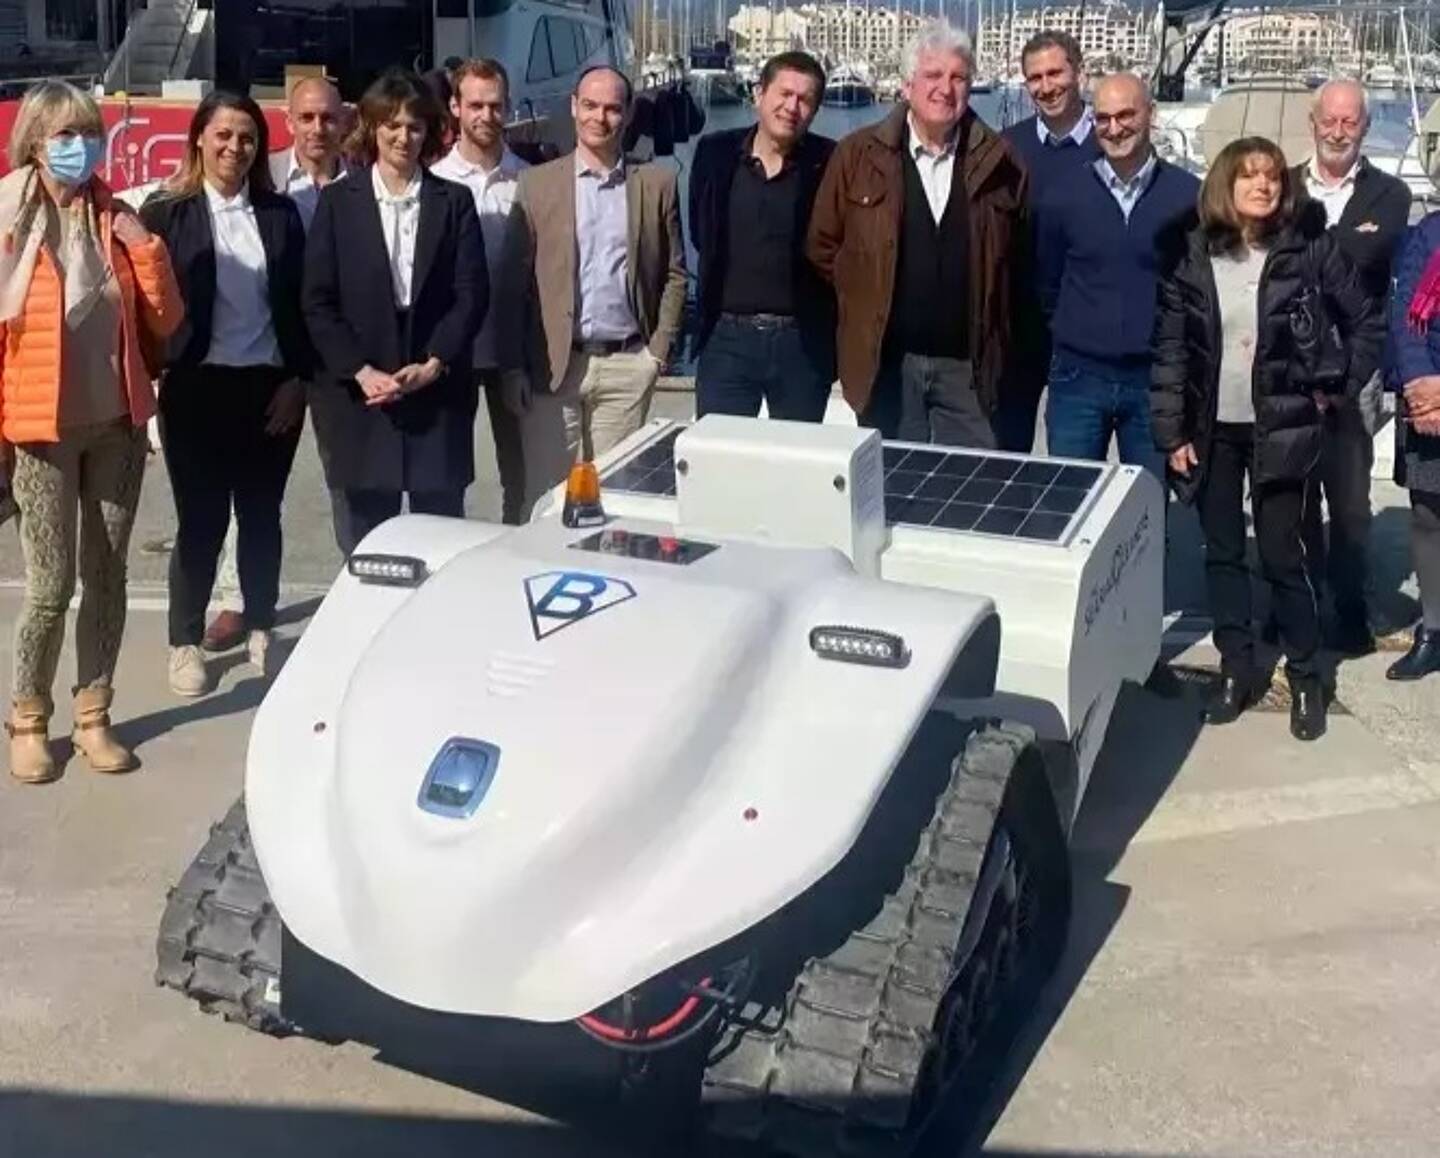 Les élus et le public ont découvert le BeBot, le robot électrique nettoyeur des plages.